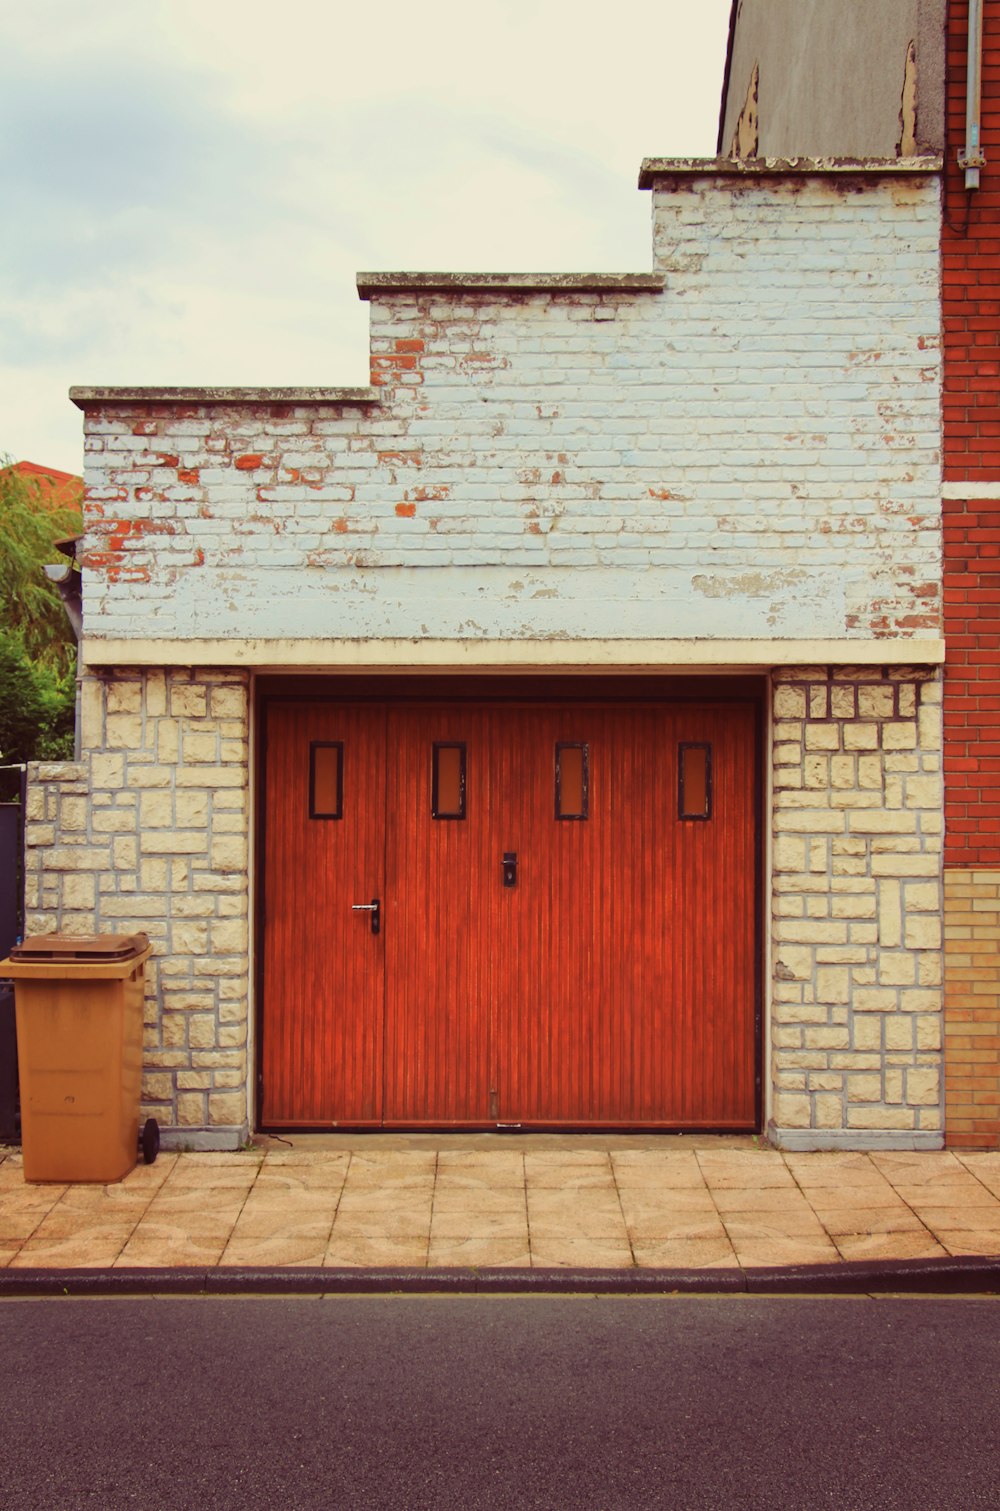 Un edificio di mattoni con una porta rossa e un bidone della spazzatura